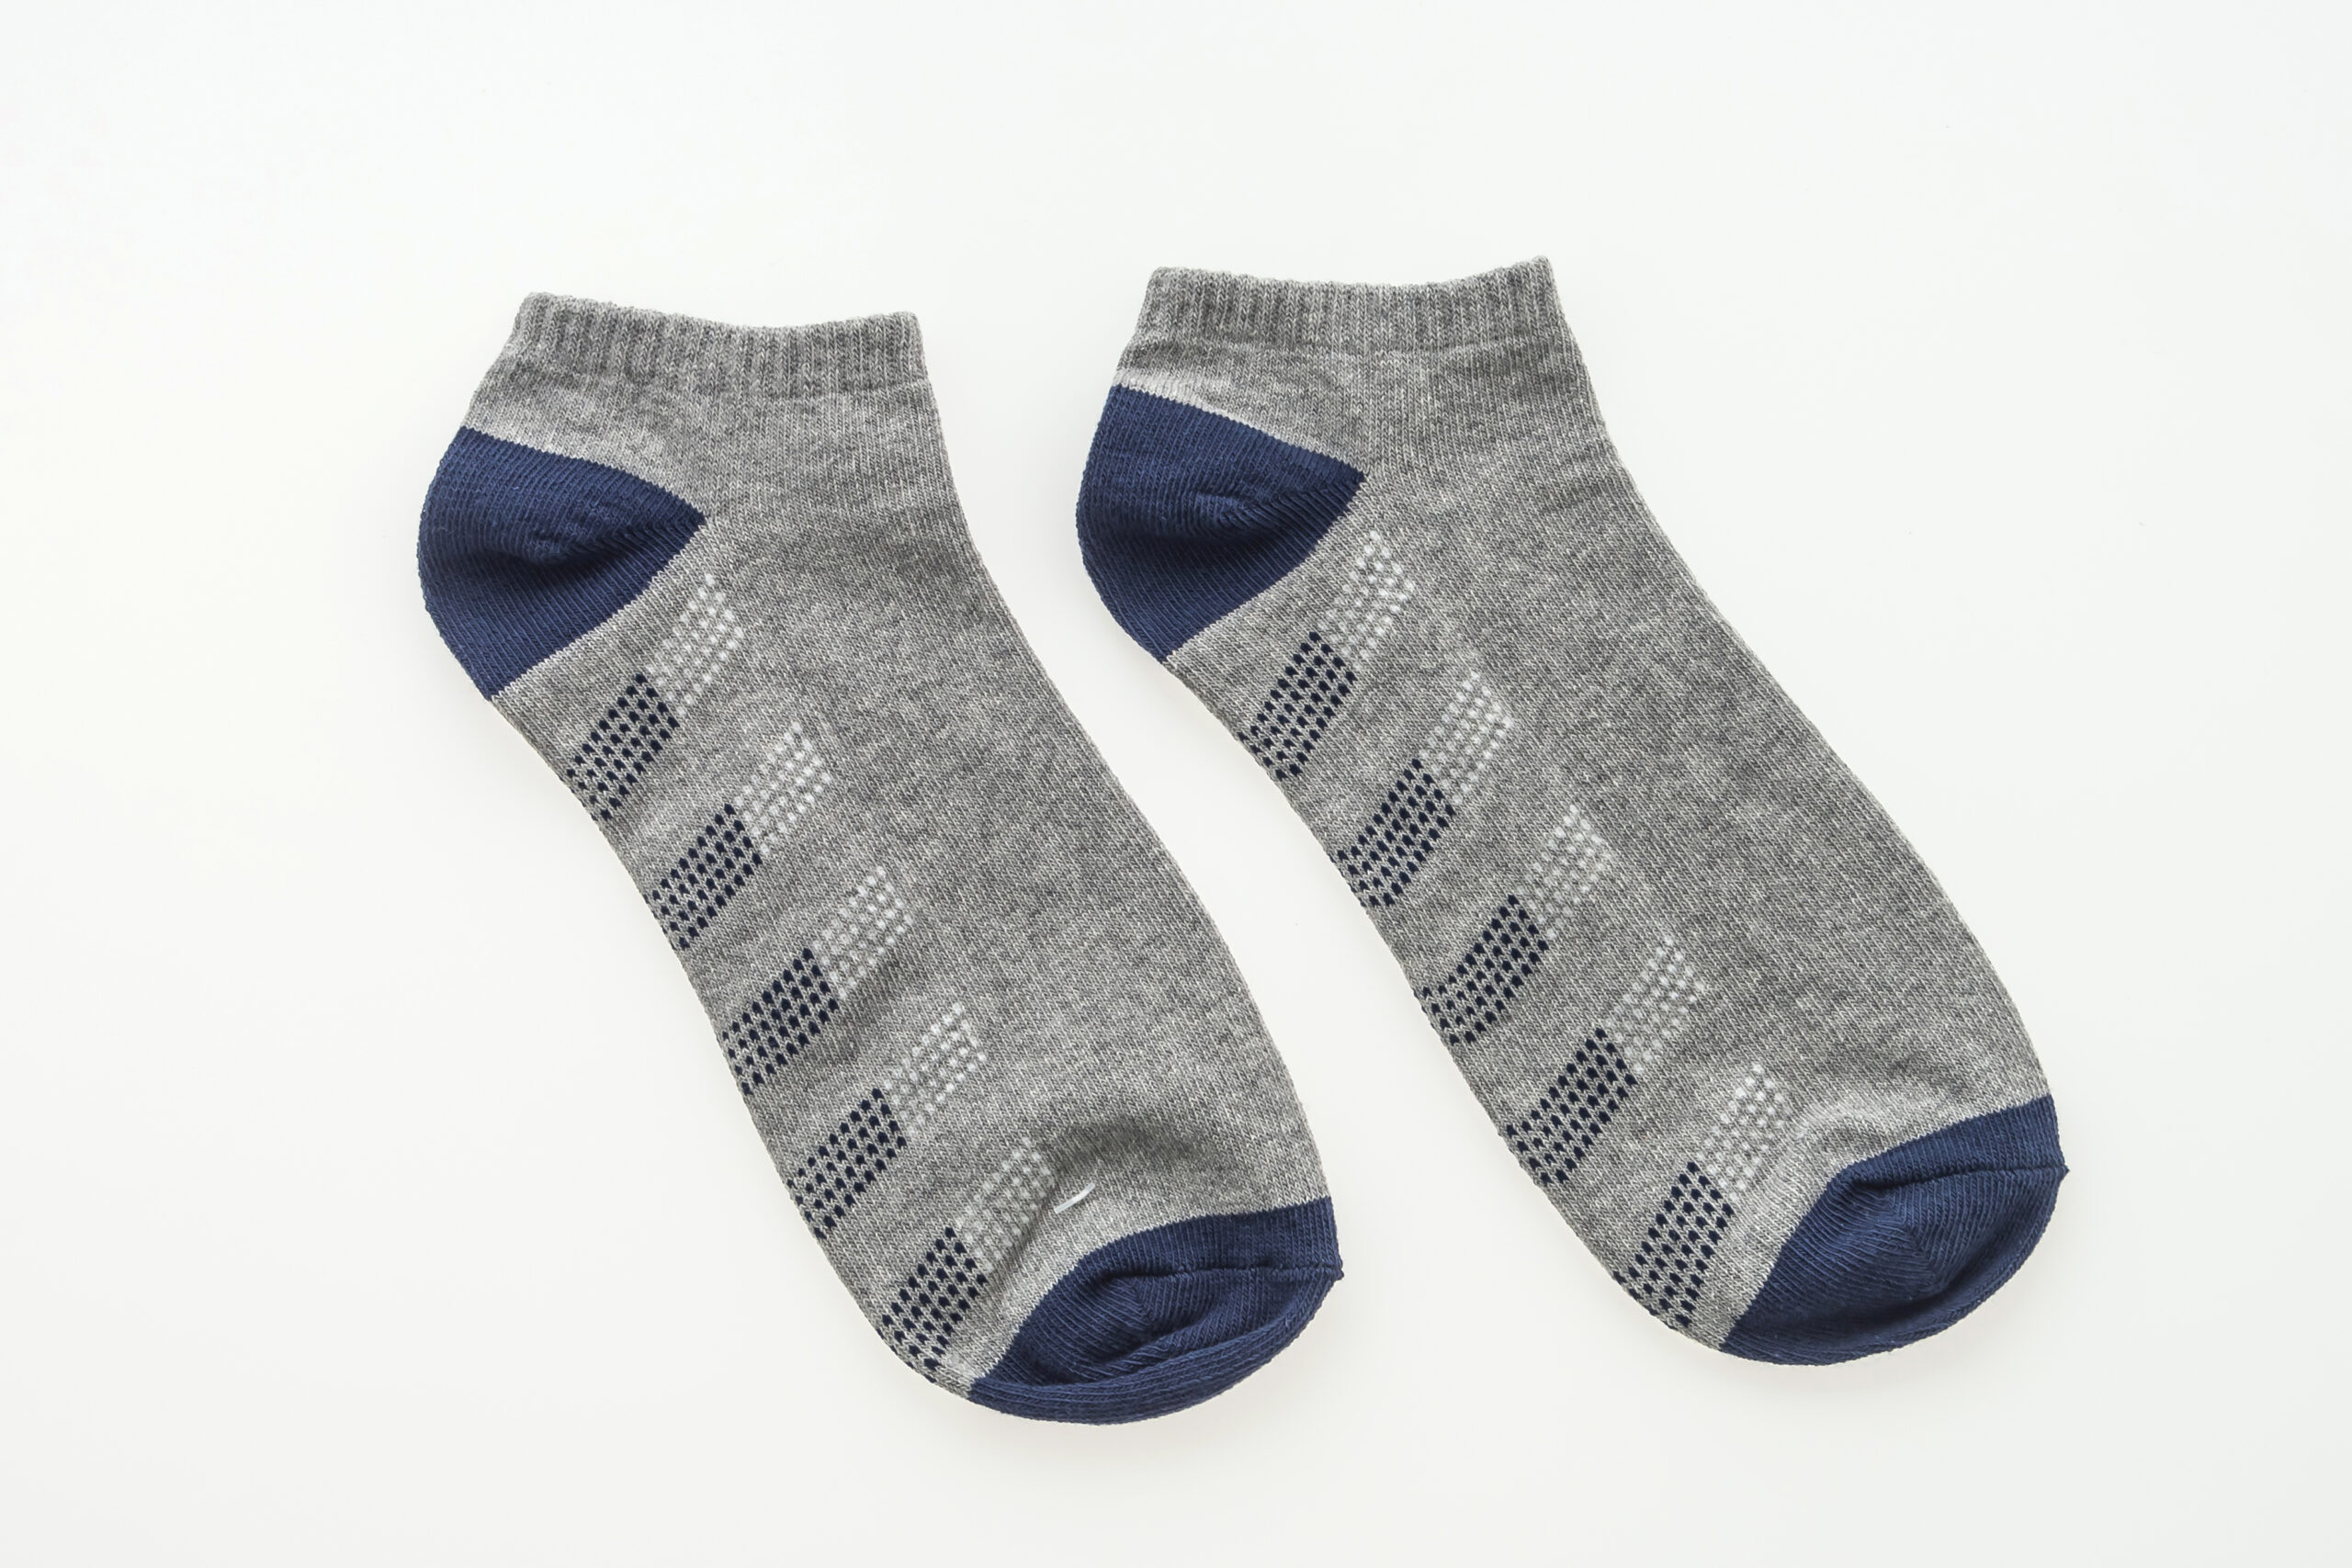 Je bekijkt nu Anti-Slip sokken voor ouderen: de voordelen van anti-slip sokken voor ouderen